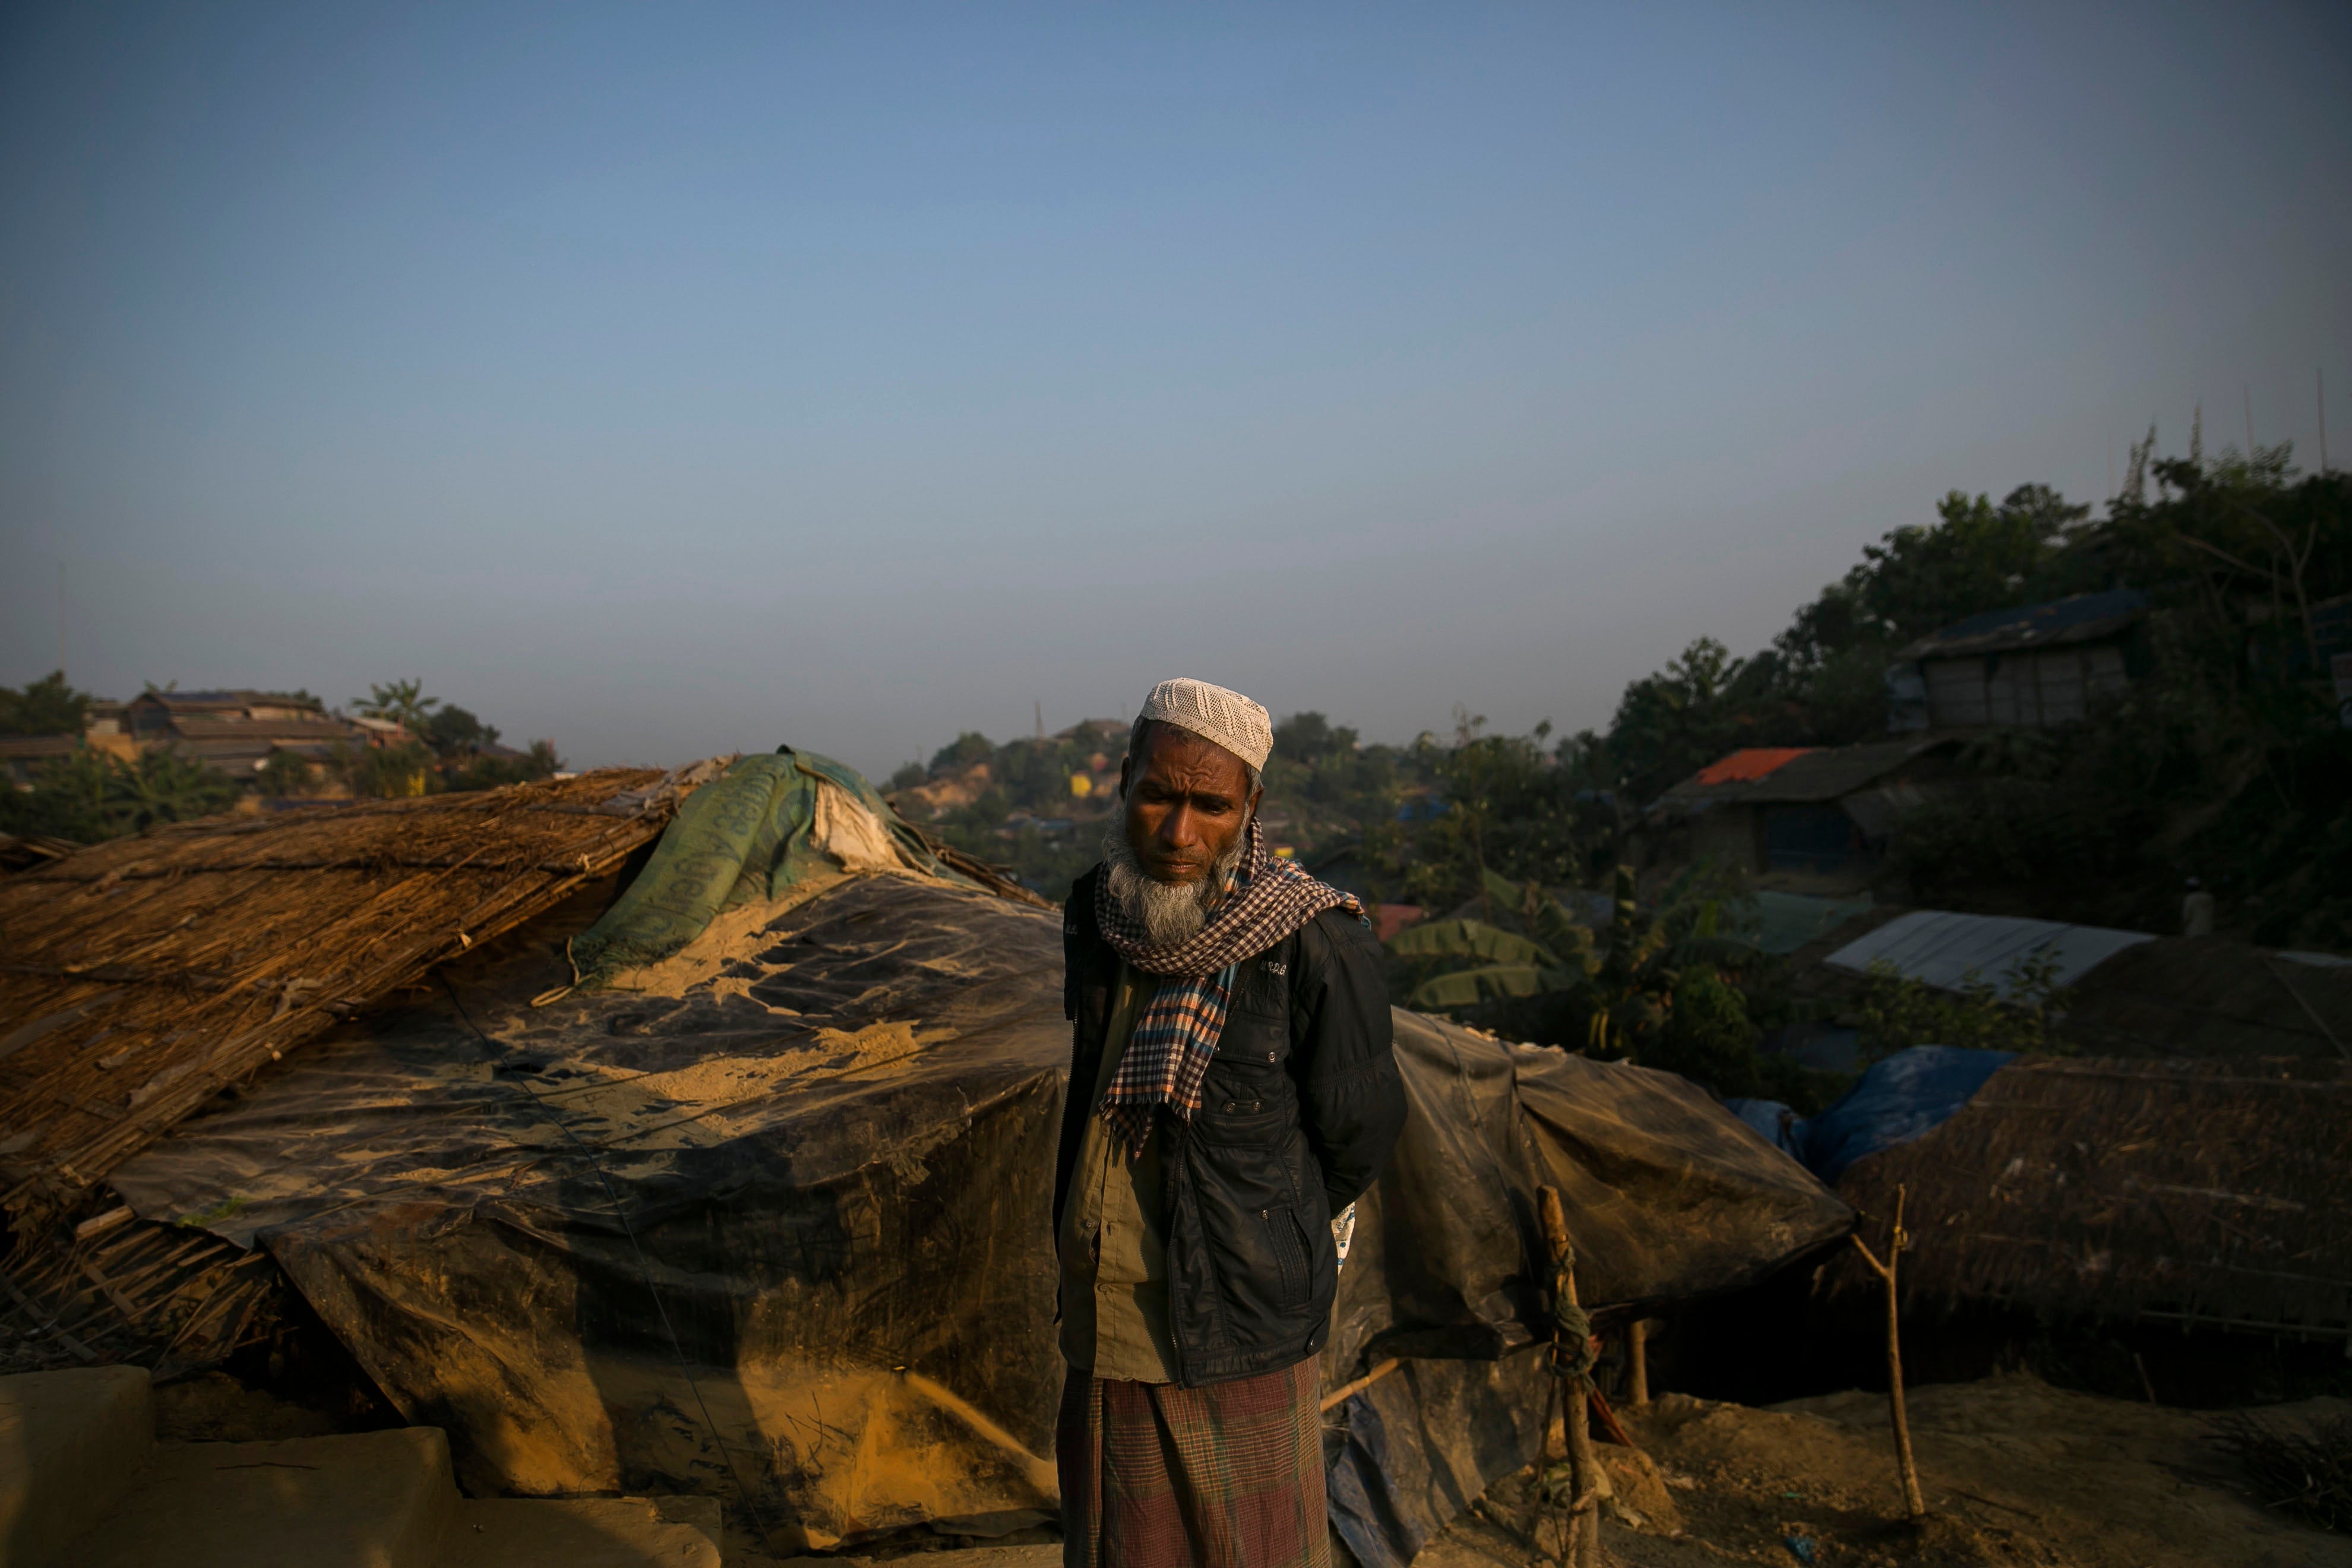 Un réfugié rohingya ayant fui le Myanmar, photographié devant sa tente dilapidée dans le camp de réfugiés de Cox's Bazar, au Bangladesh, le 23 janvier 2020.